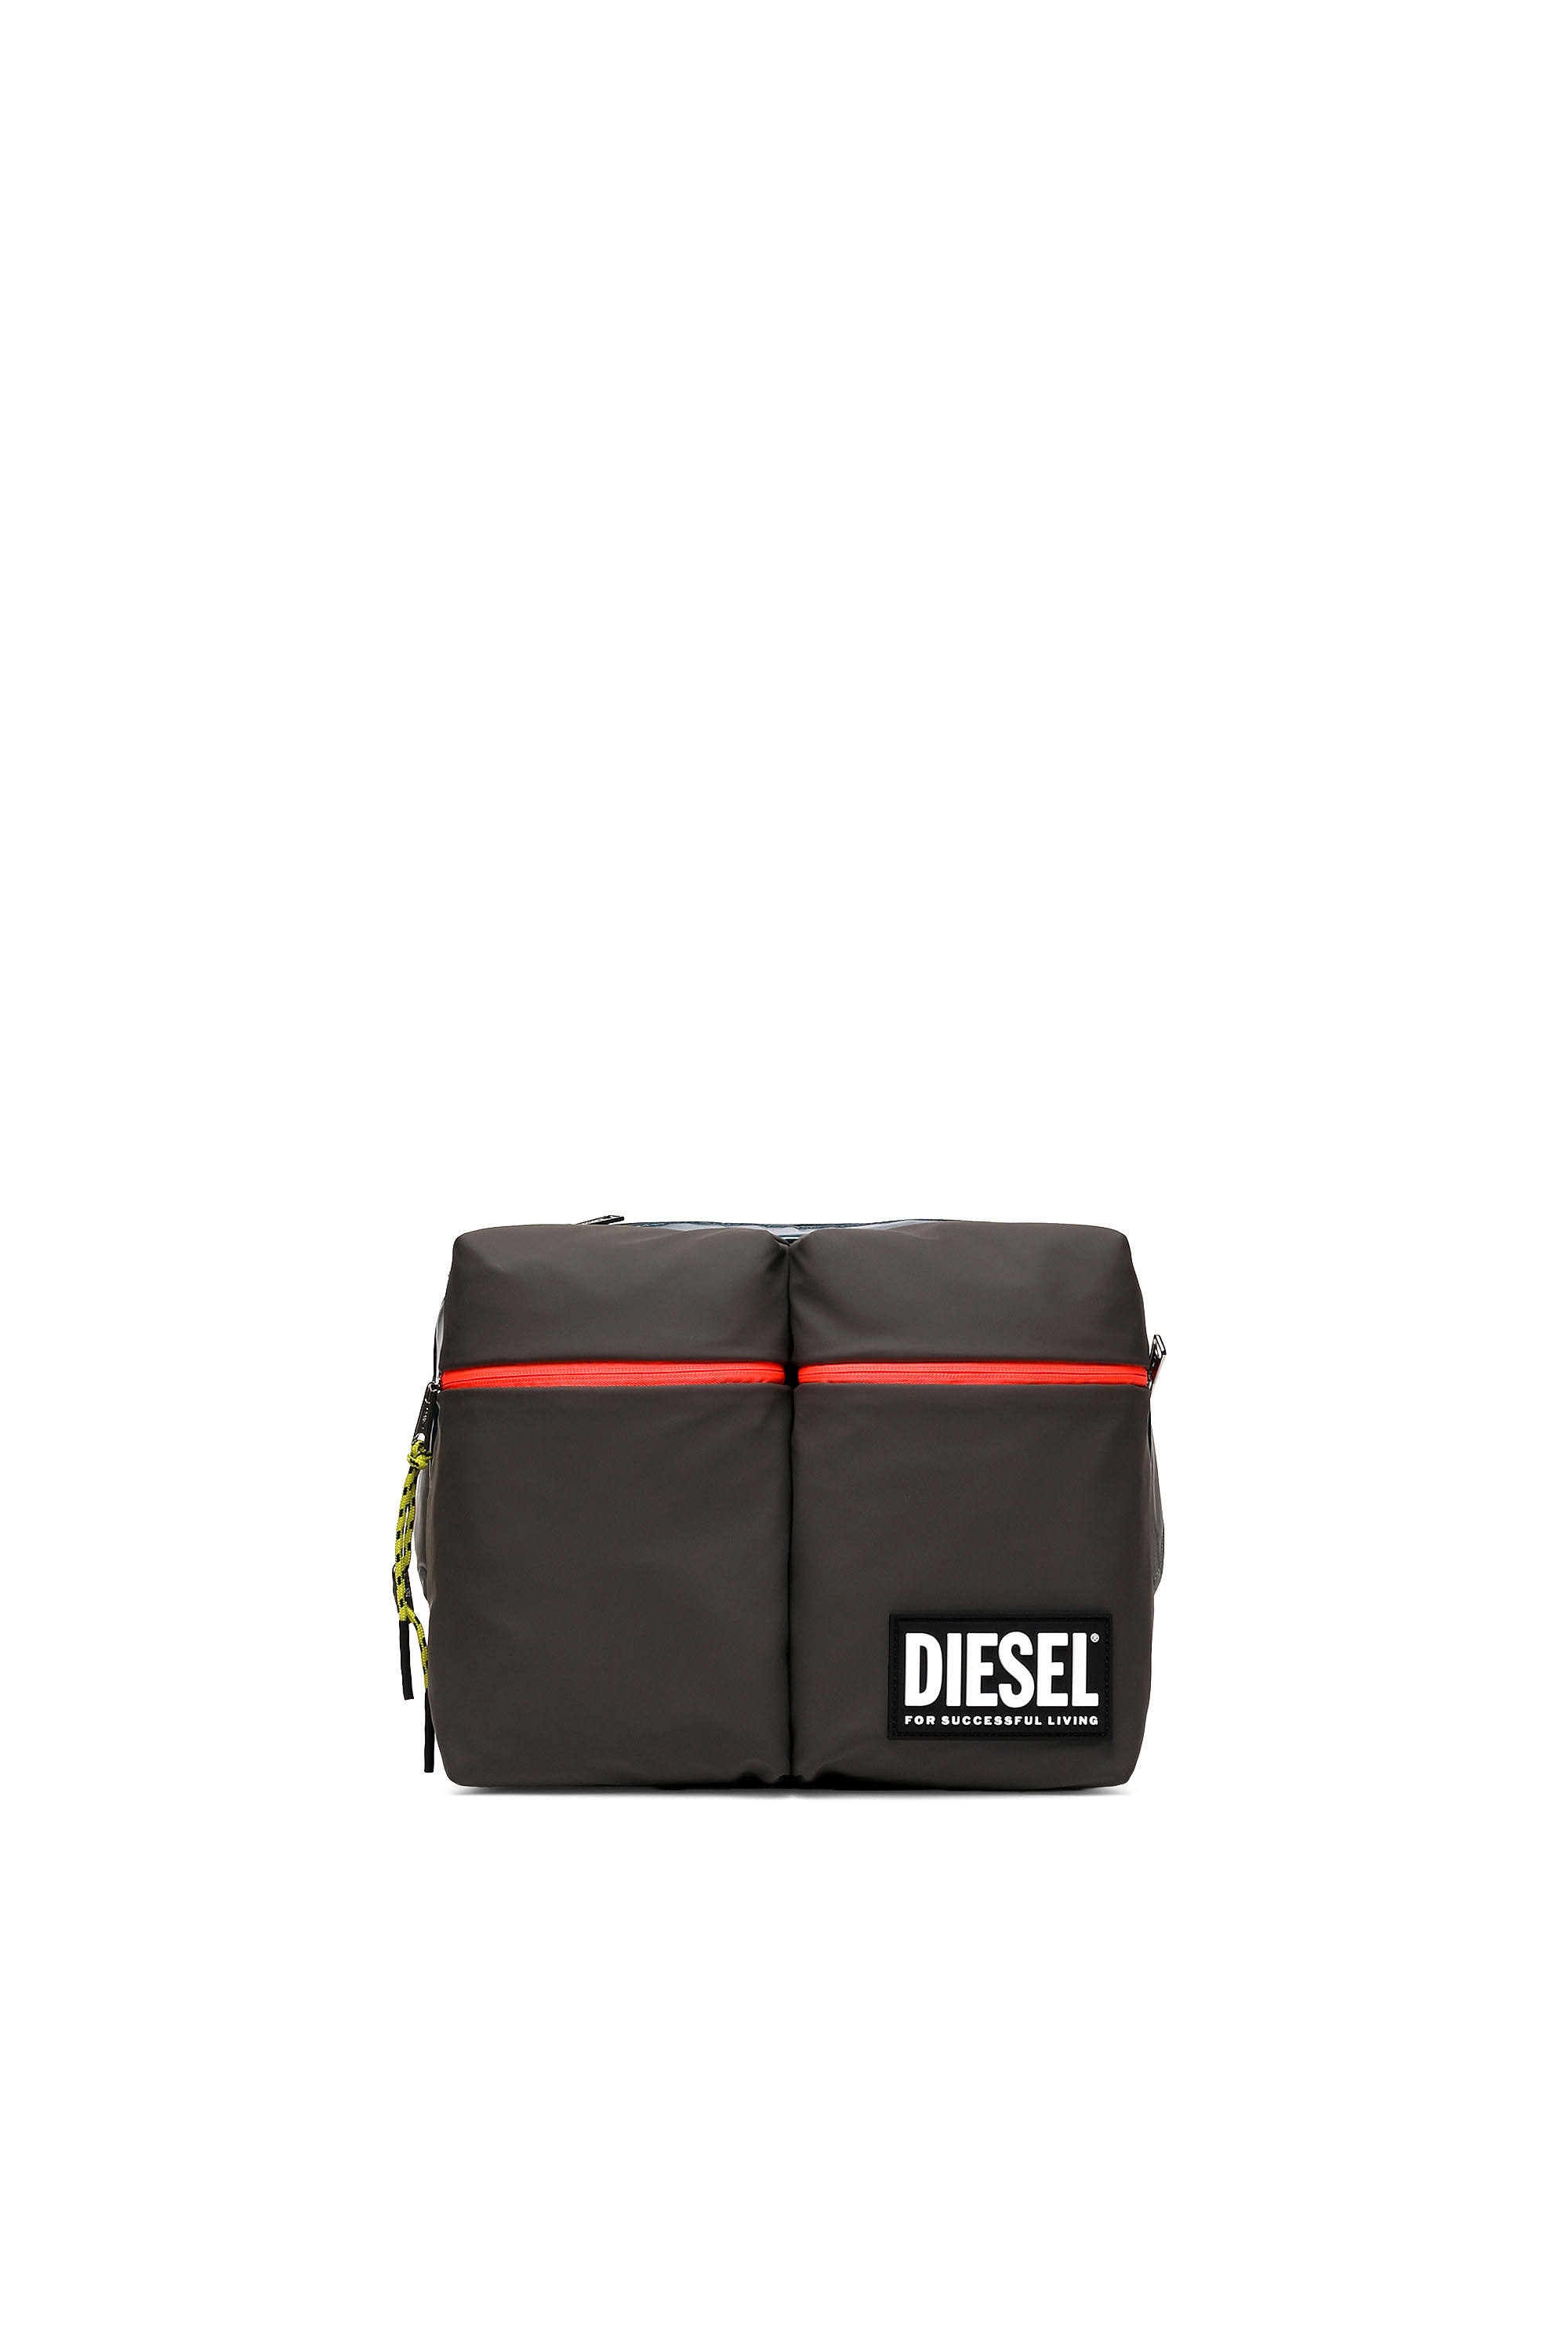 Diesel - CROSYO, Multicolor/Black - Image 1